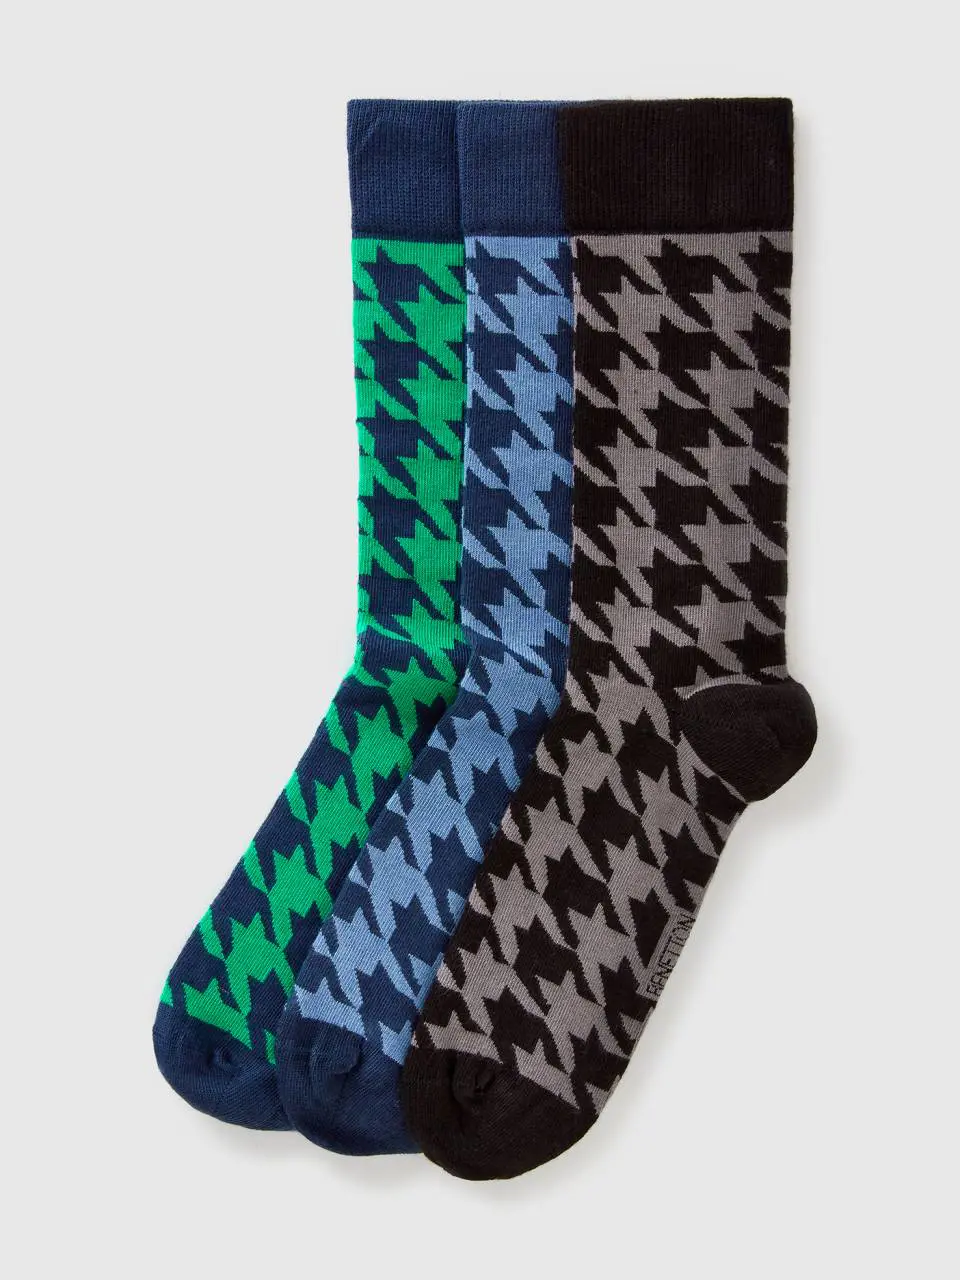 Benetton long houndstooth socks. 1